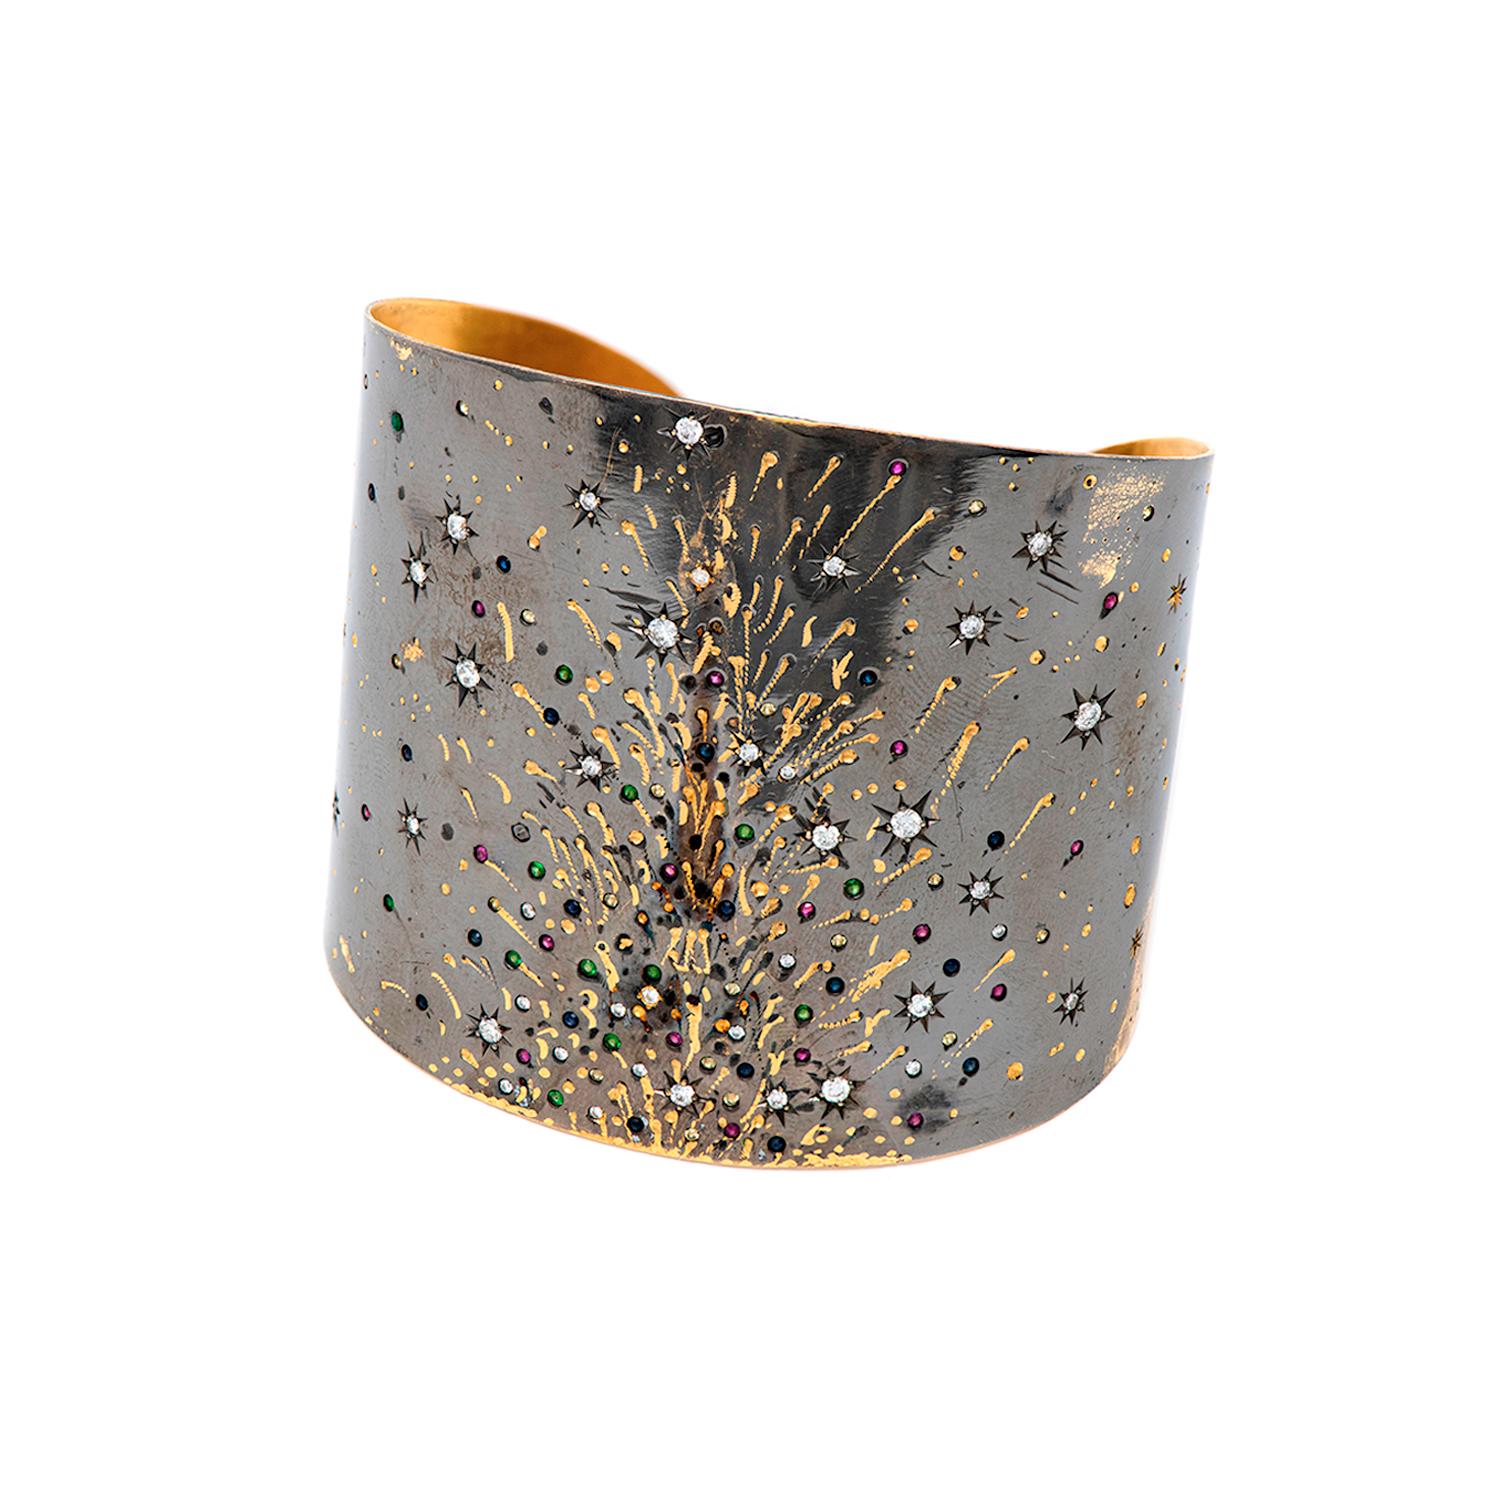 Armband aus 18 Karat Schwarzgold mit Diamanten, Rubinen, Smaragden und Saphiren aus dem 21. Jahrhundert

Armband aus 18 Karat Gold mit Ruthenium-Finish, um ein nächtliches Feuerwerk zu simulieren. Rubine, Smaragde, Saphire und Diamanten sorgen für